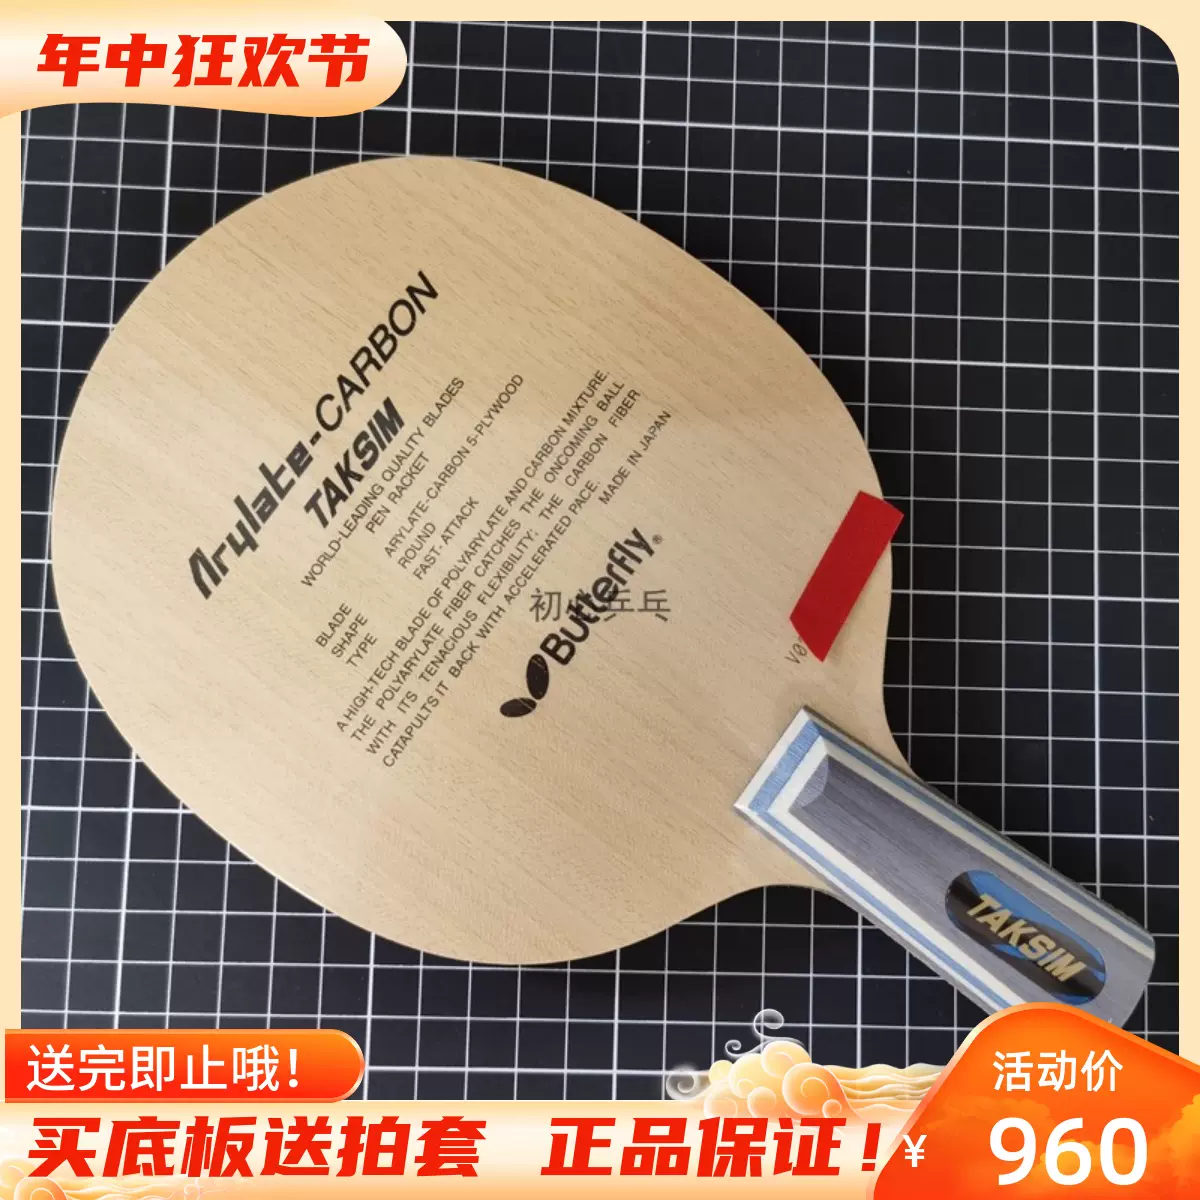 23年新款林高远同款乒乓球拍远剑干将莫邪碳素专业比赛乒乓球底板-Taobao